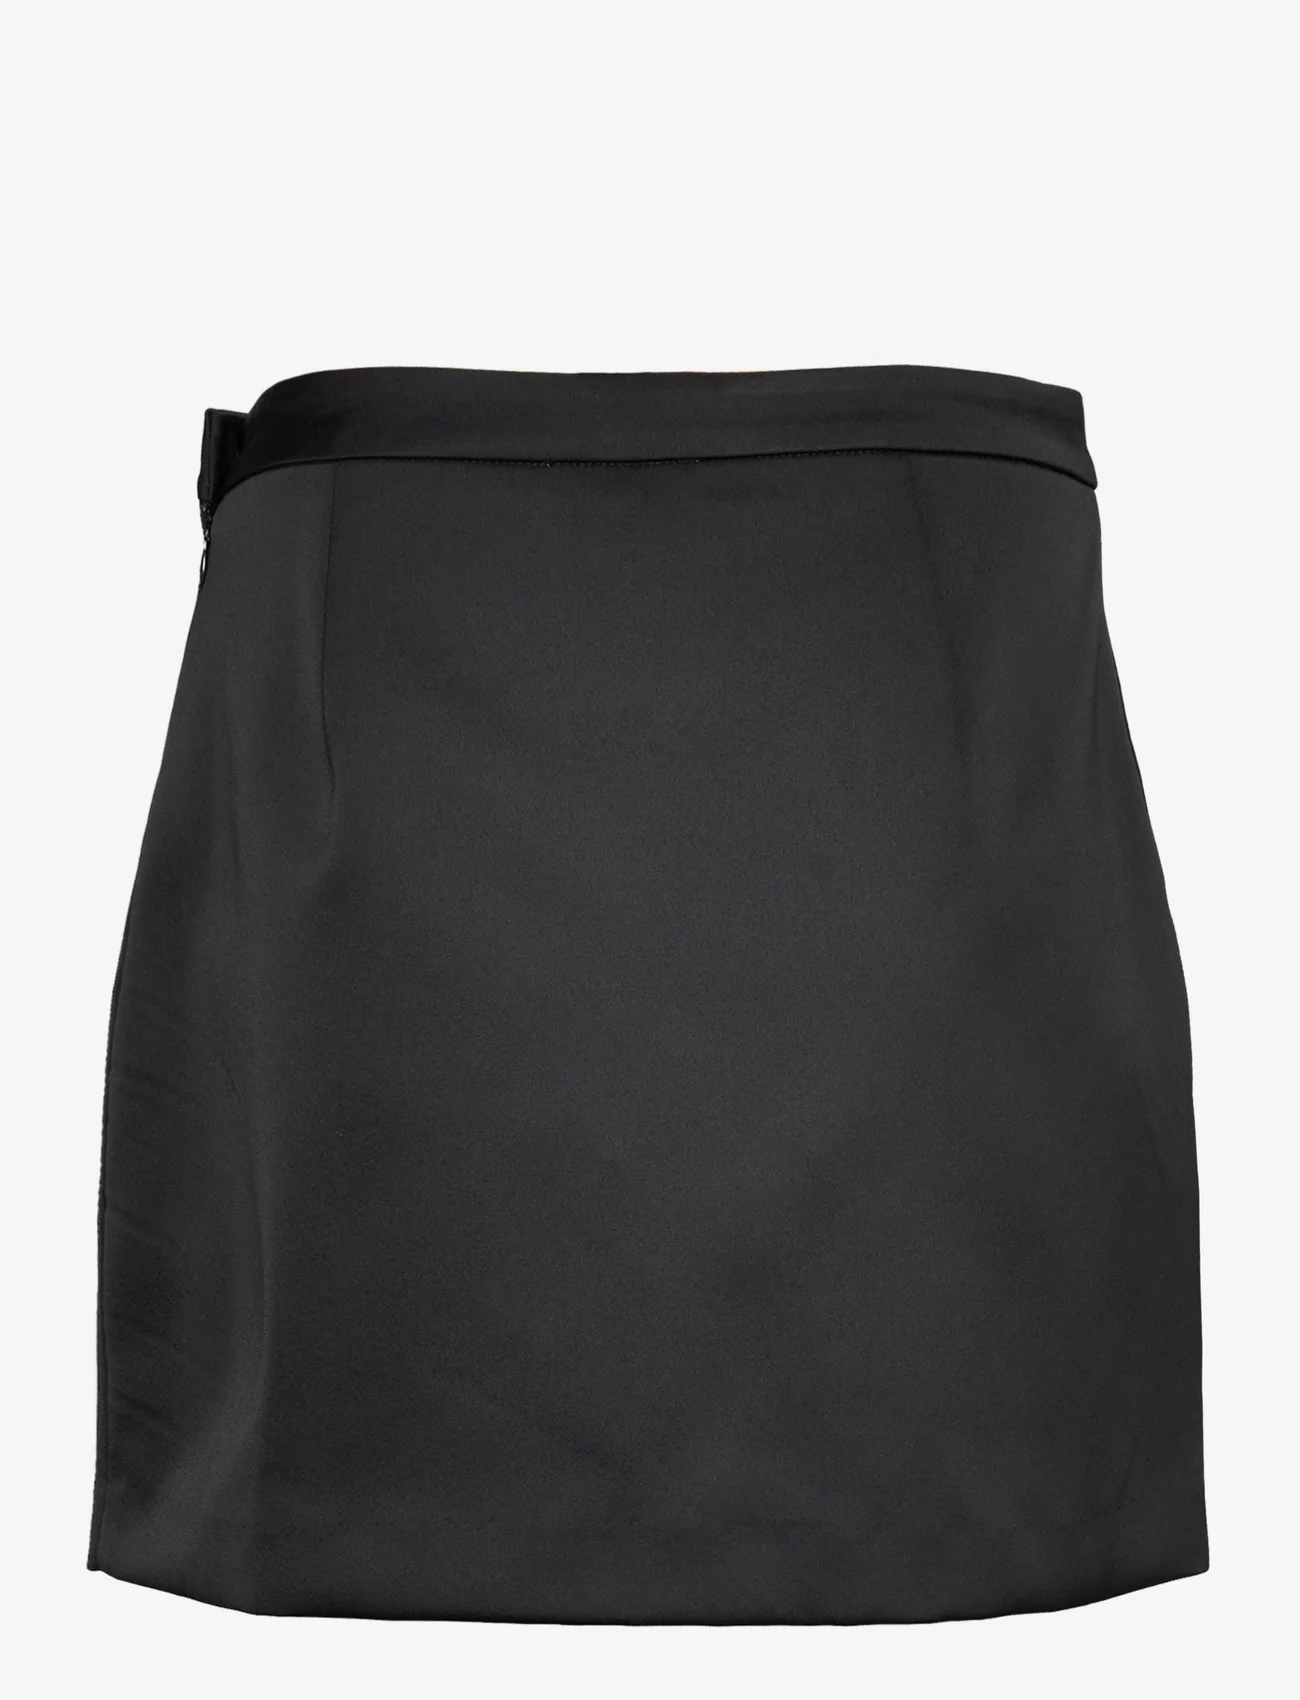 Cras - Samycras Skirt - short skirts - black - 1